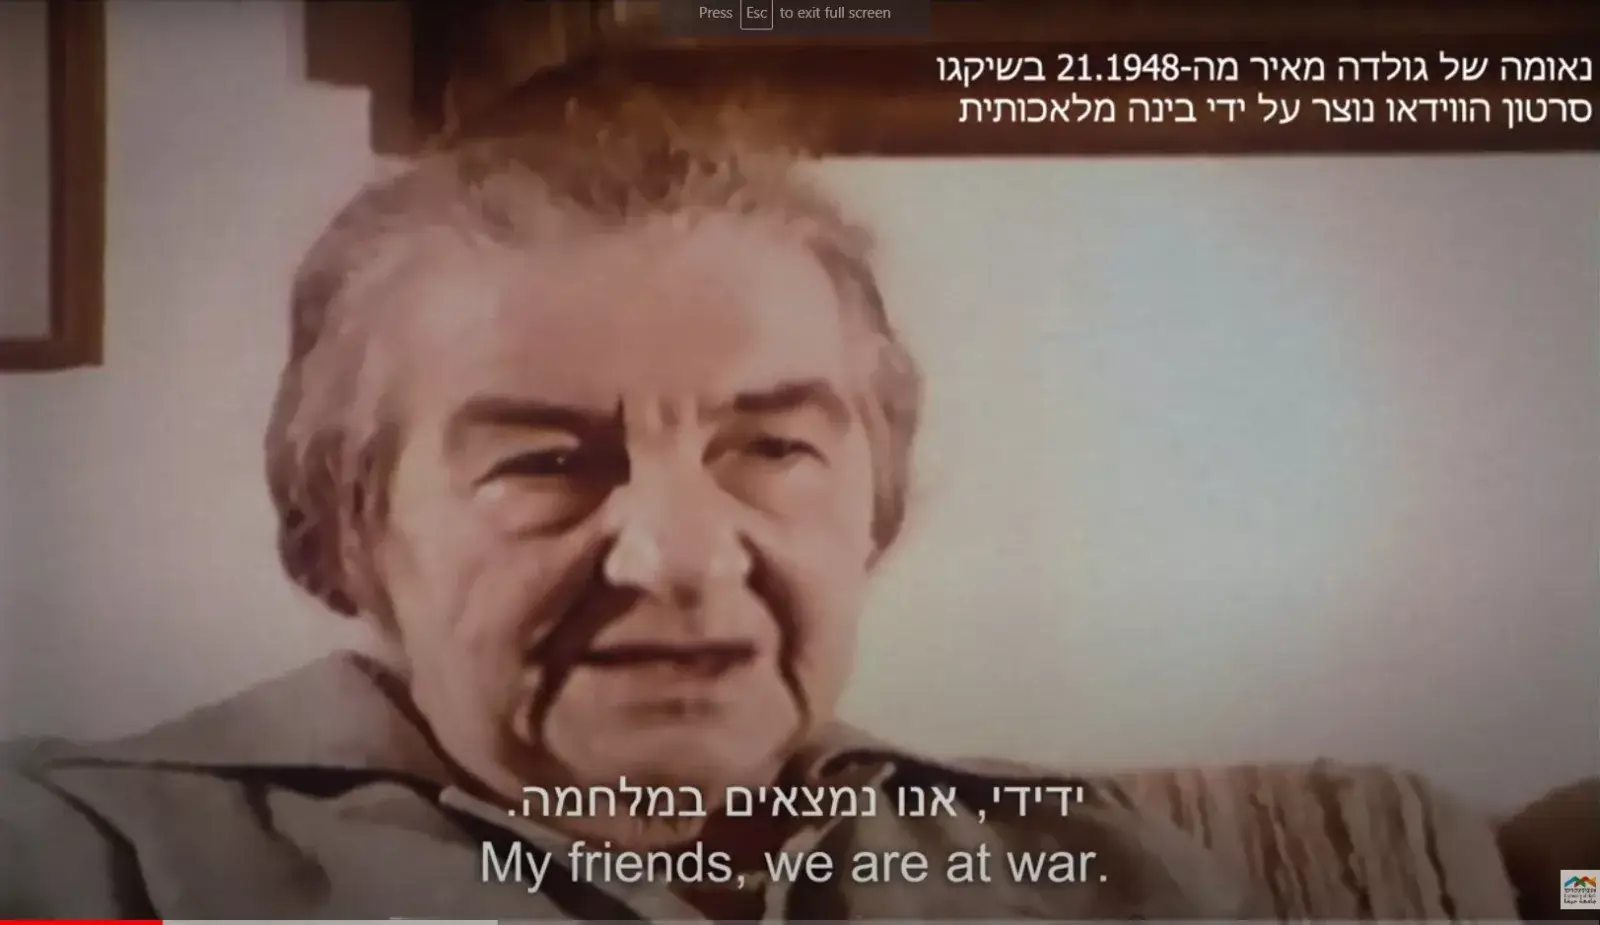 קטע מתוך סרטון נאום שנשאה גולדה מאיר לימים ראש ממשלת ישראל, בכנס באוהיו ב-1948. הנאום בכלל לא צולם והוכן באמצעות בינה מלאכותית